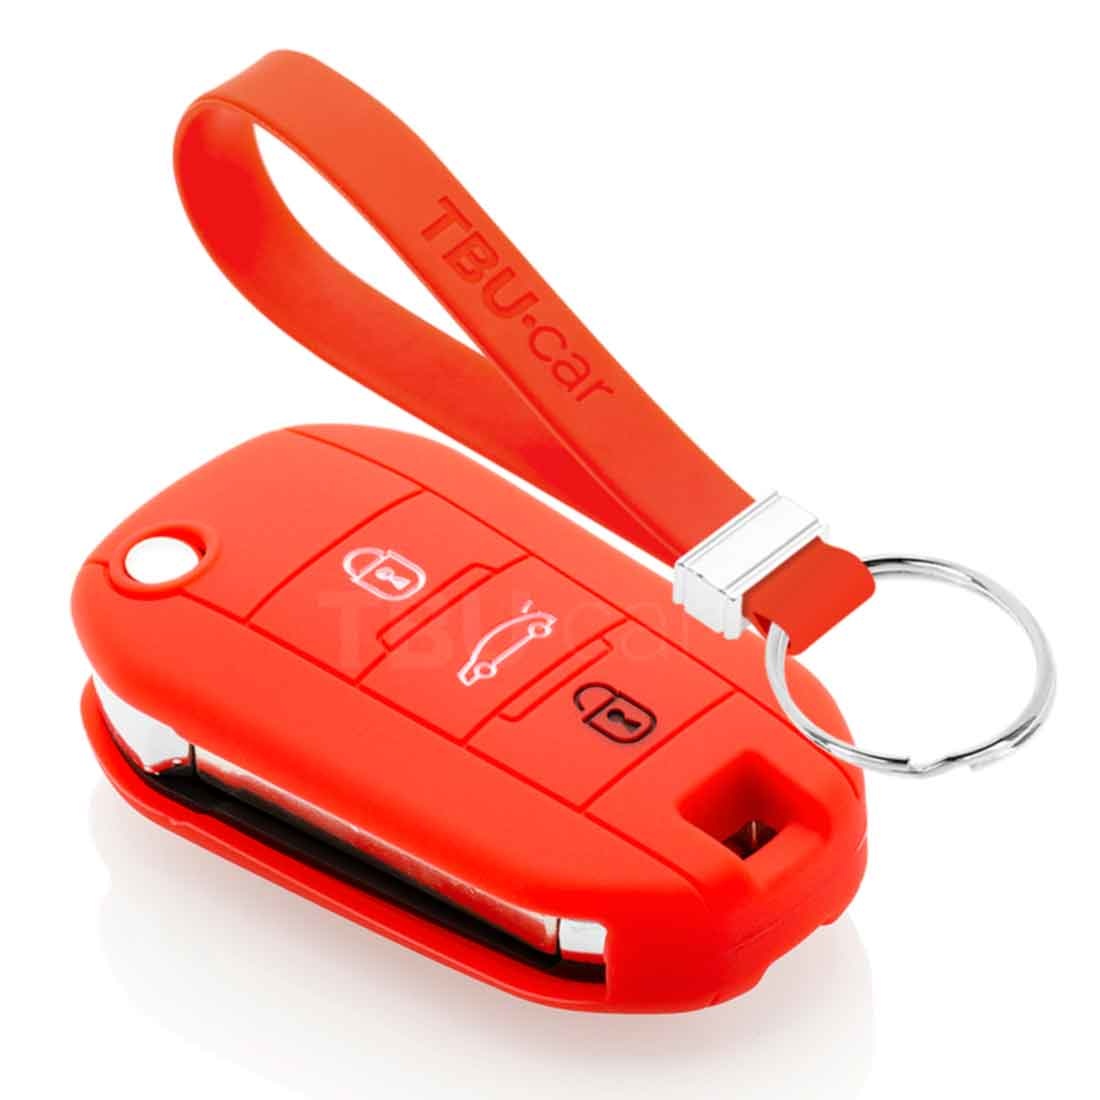 https://cdn.webshopapp.com/shops/73499/files/356688767/tbu-car-tbu-car-car-key-cover-compatible-with-opel.jpg